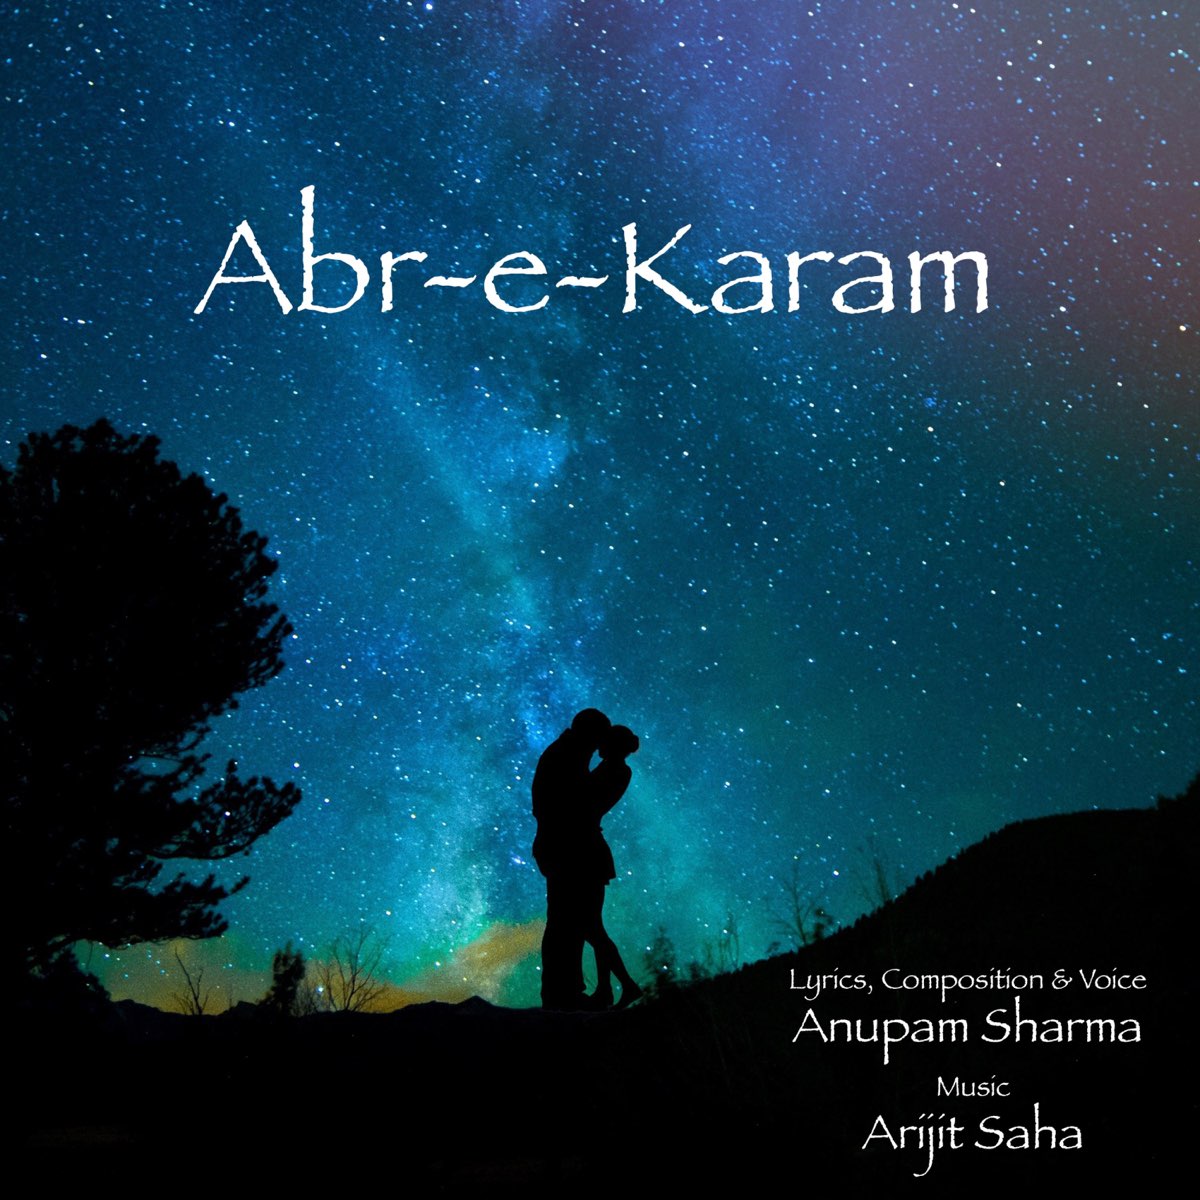 Druppelen Behoefte aan leider Abr-E-Karam (feat. Anupam Sharma) - Single by Arijit Saha on Apple Music